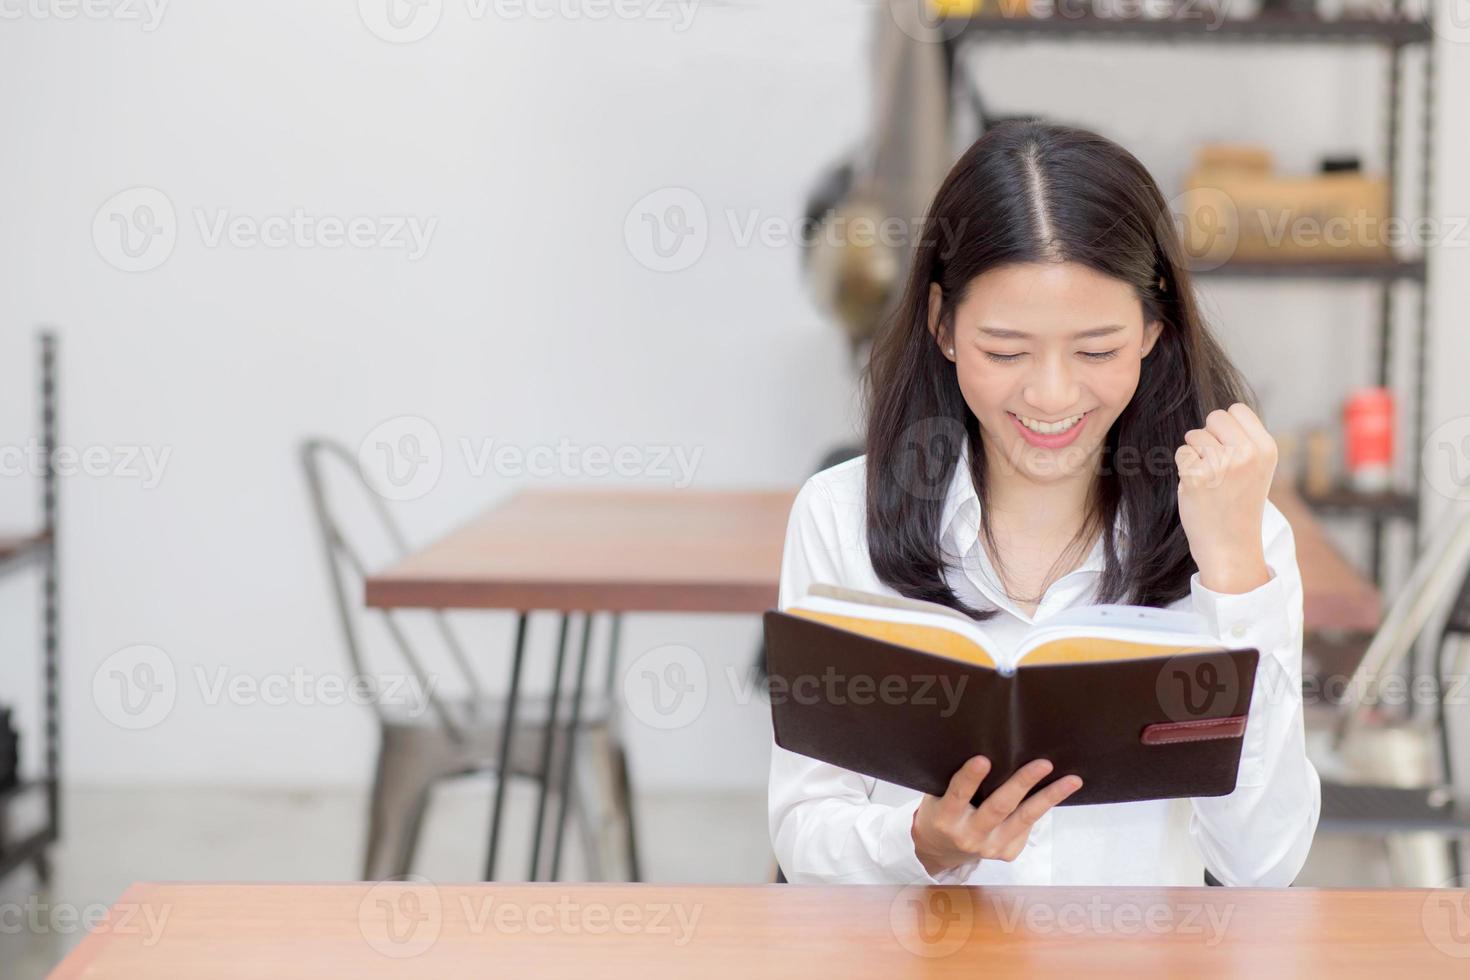 mooi van portret zakelijke aziatische jonge vrouw die op notebook leest met succes op tafel, meisje kijkt opgewonden naar coffeeshop, freelance en onderwijsconcept. foto